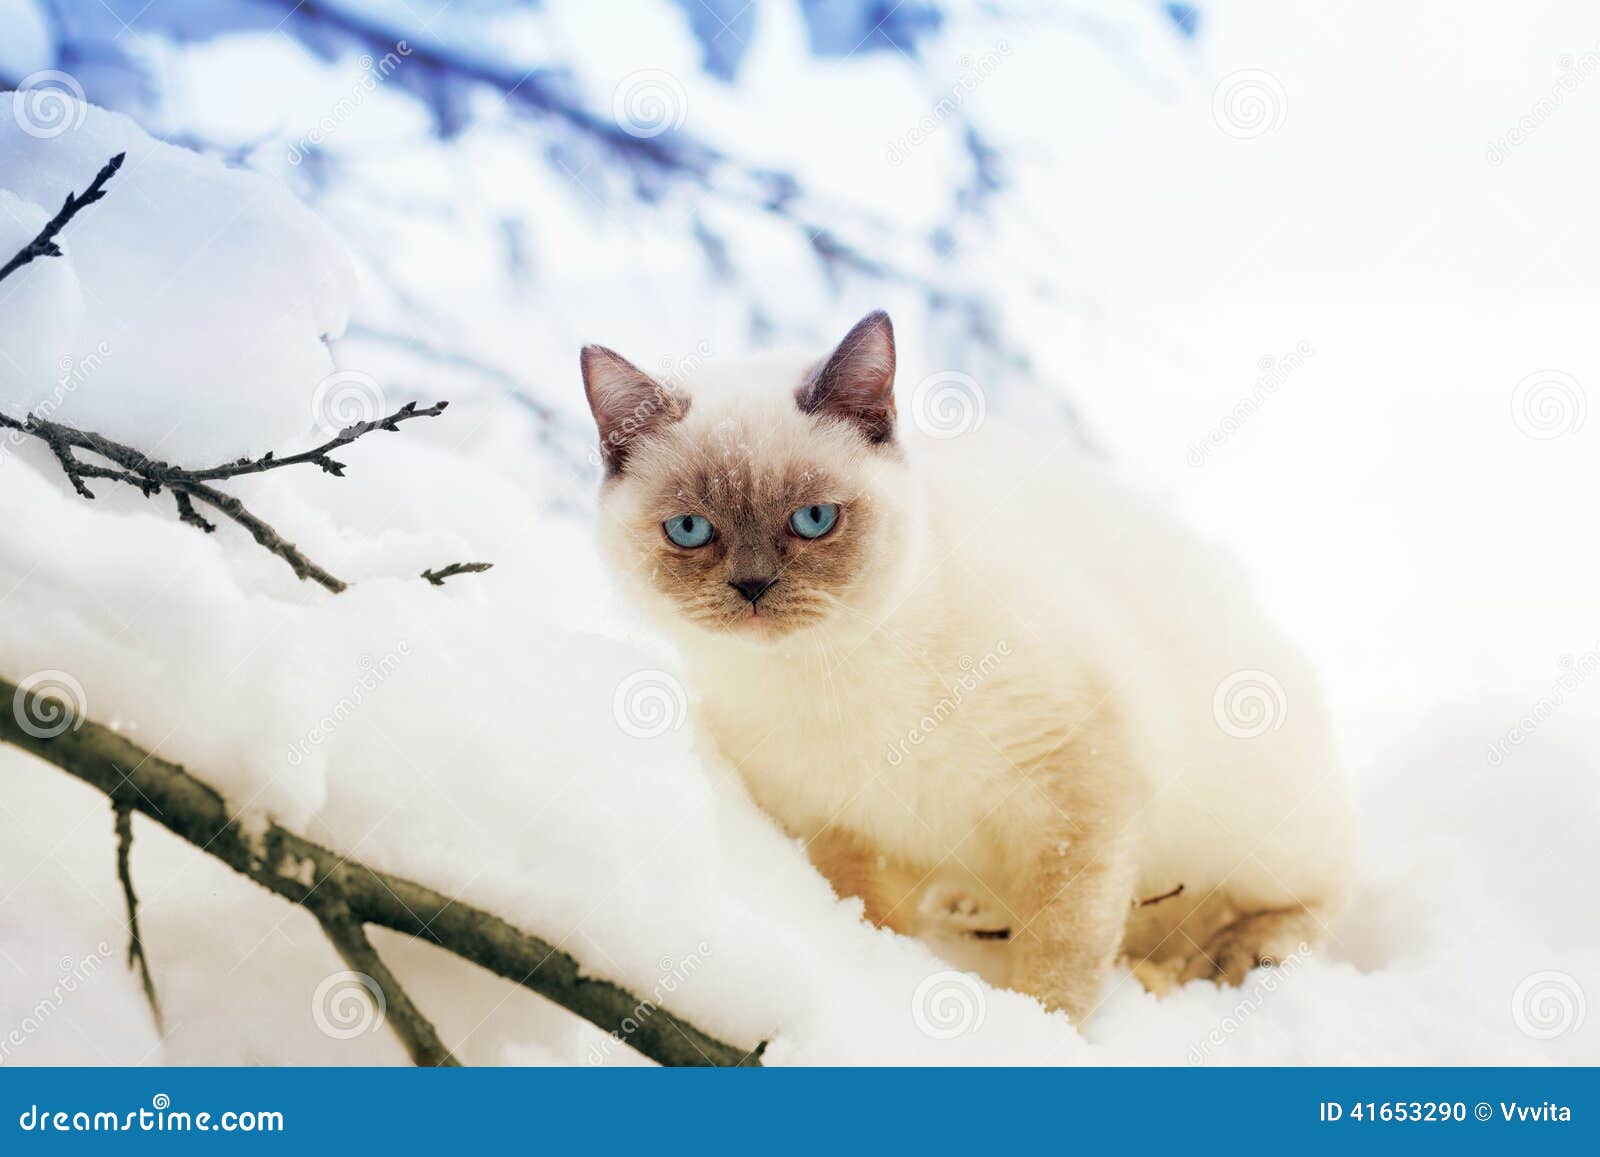 Katje in Sneeuw. Siamese katjeszitting in sneeuw